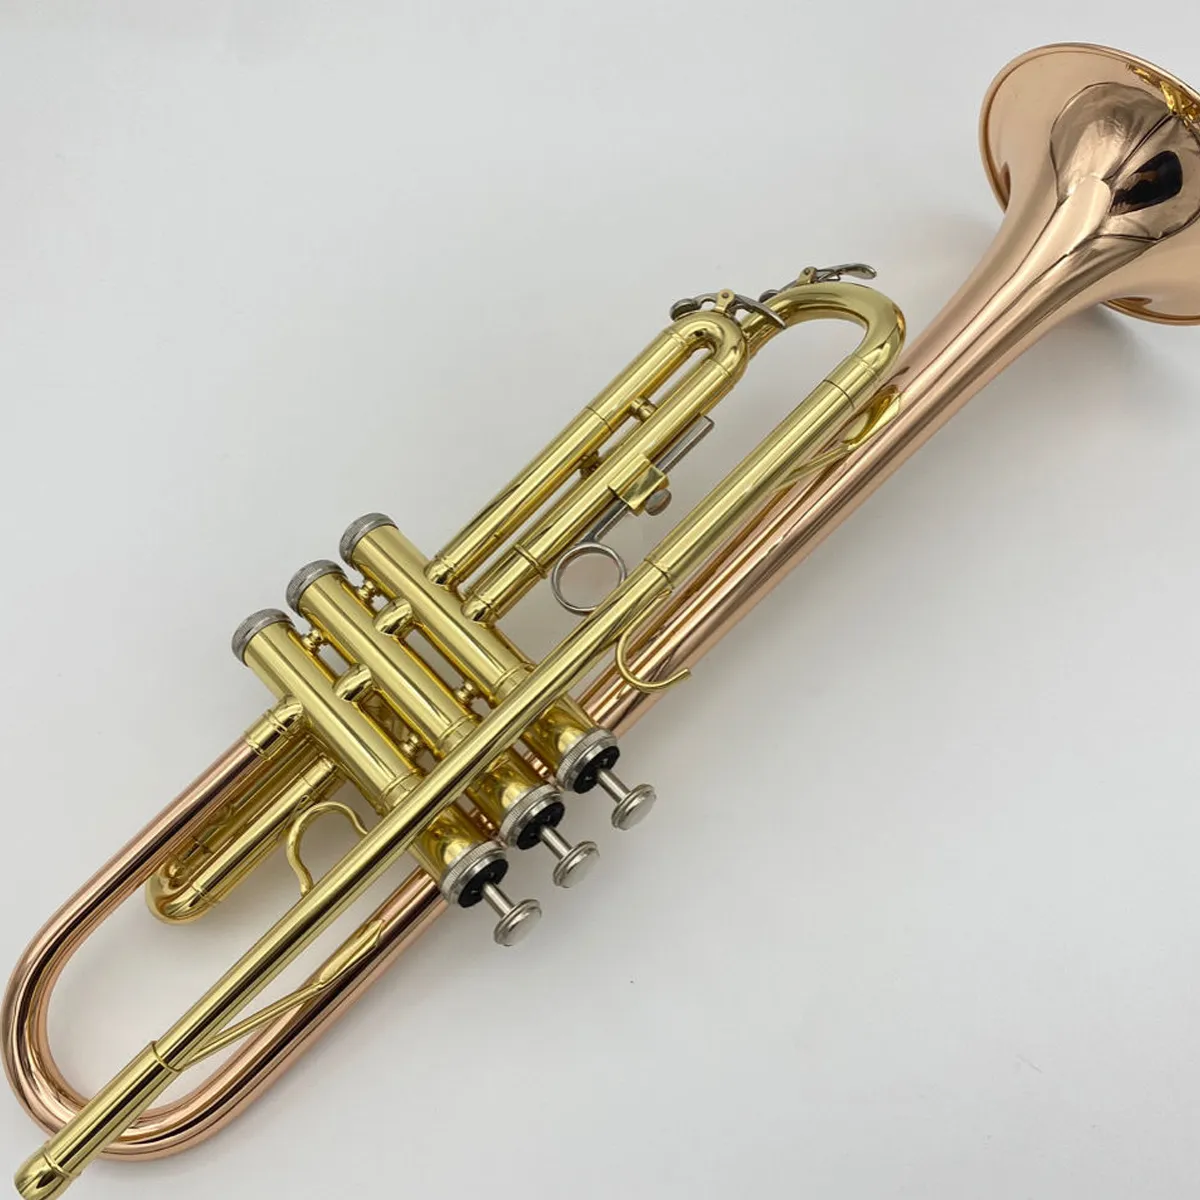 Instrumento de trompete profissional de alta qualidade para iniciantes tocarem bronze fósforo banhado a ouro com punho reverso trompete para a mão esquerda3966259